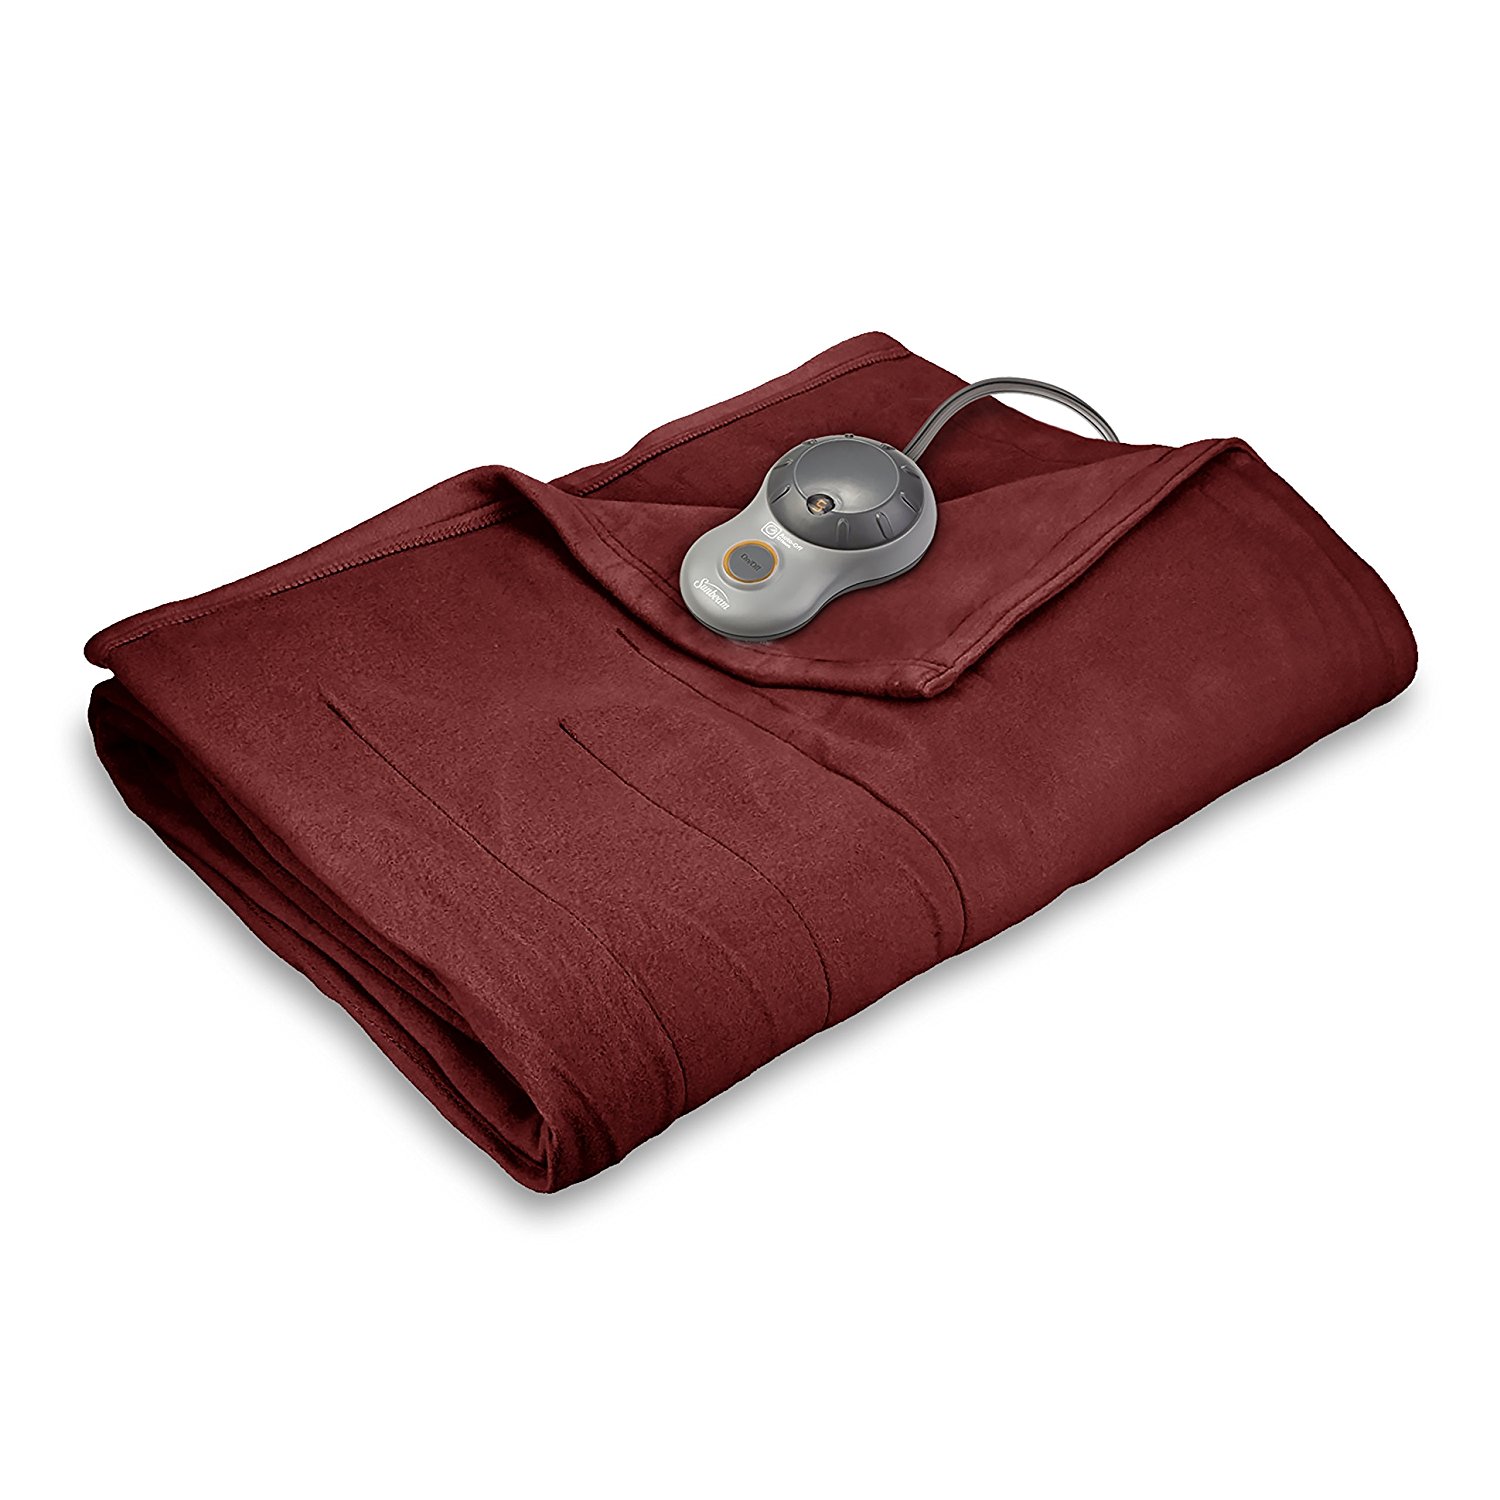 Sunbeam Quilted Fleece Heated Blanket with EasySet Pro Controller, Twin, Garnet